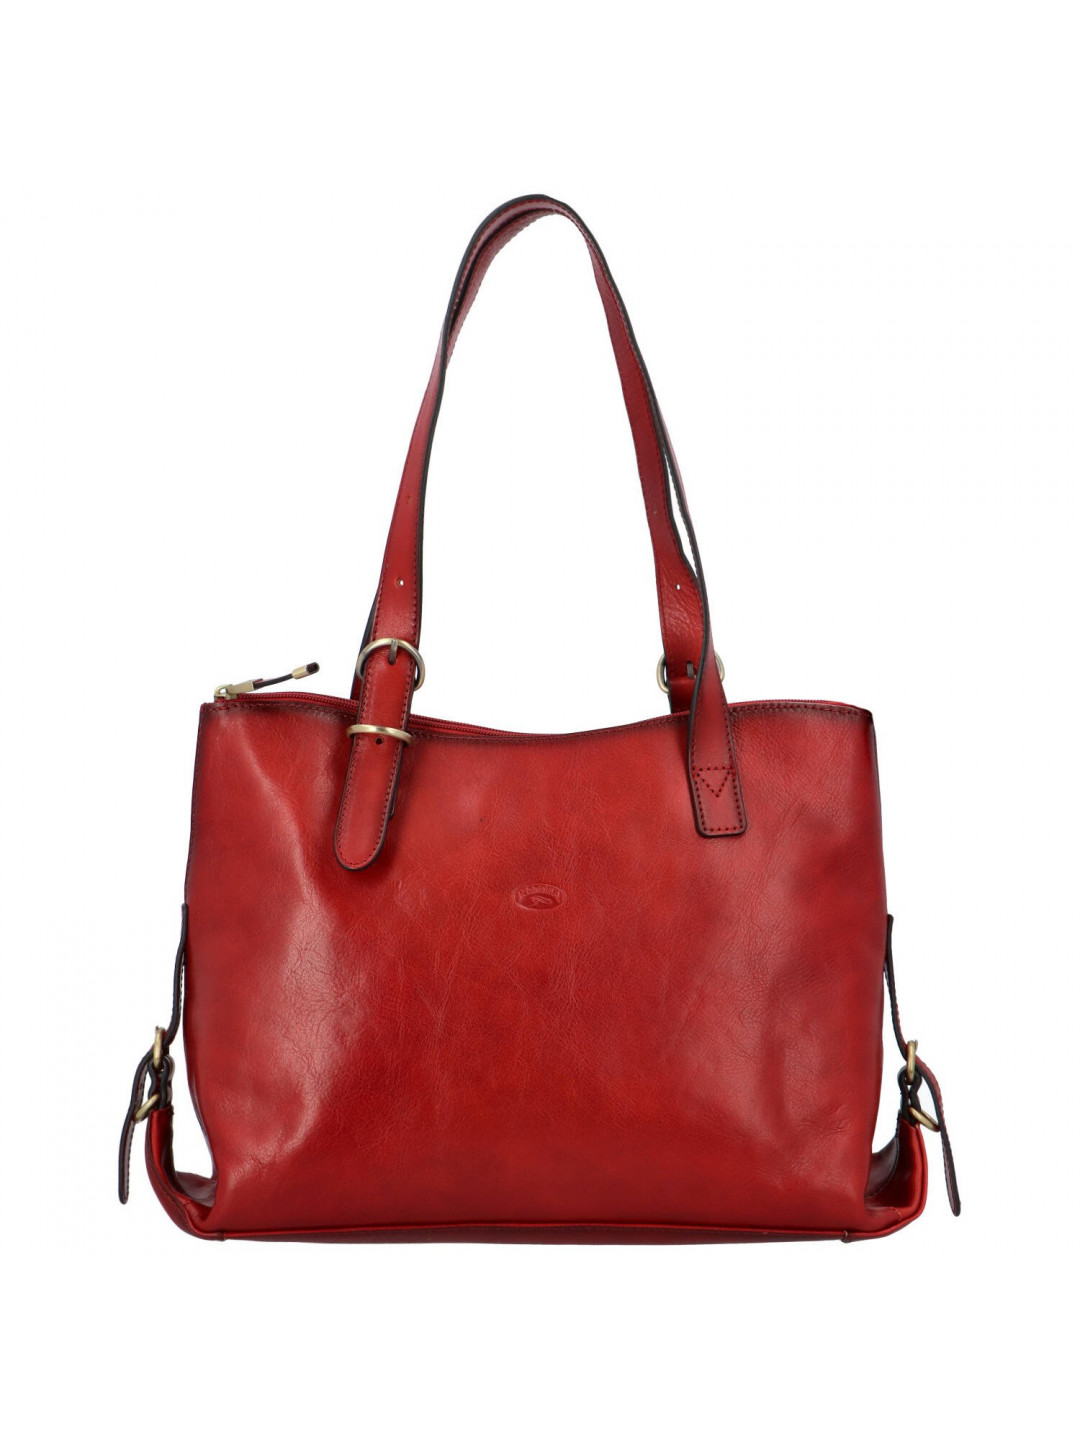 Dámská kožená kabelka přes rameno tmavě červená – Katana Sanne